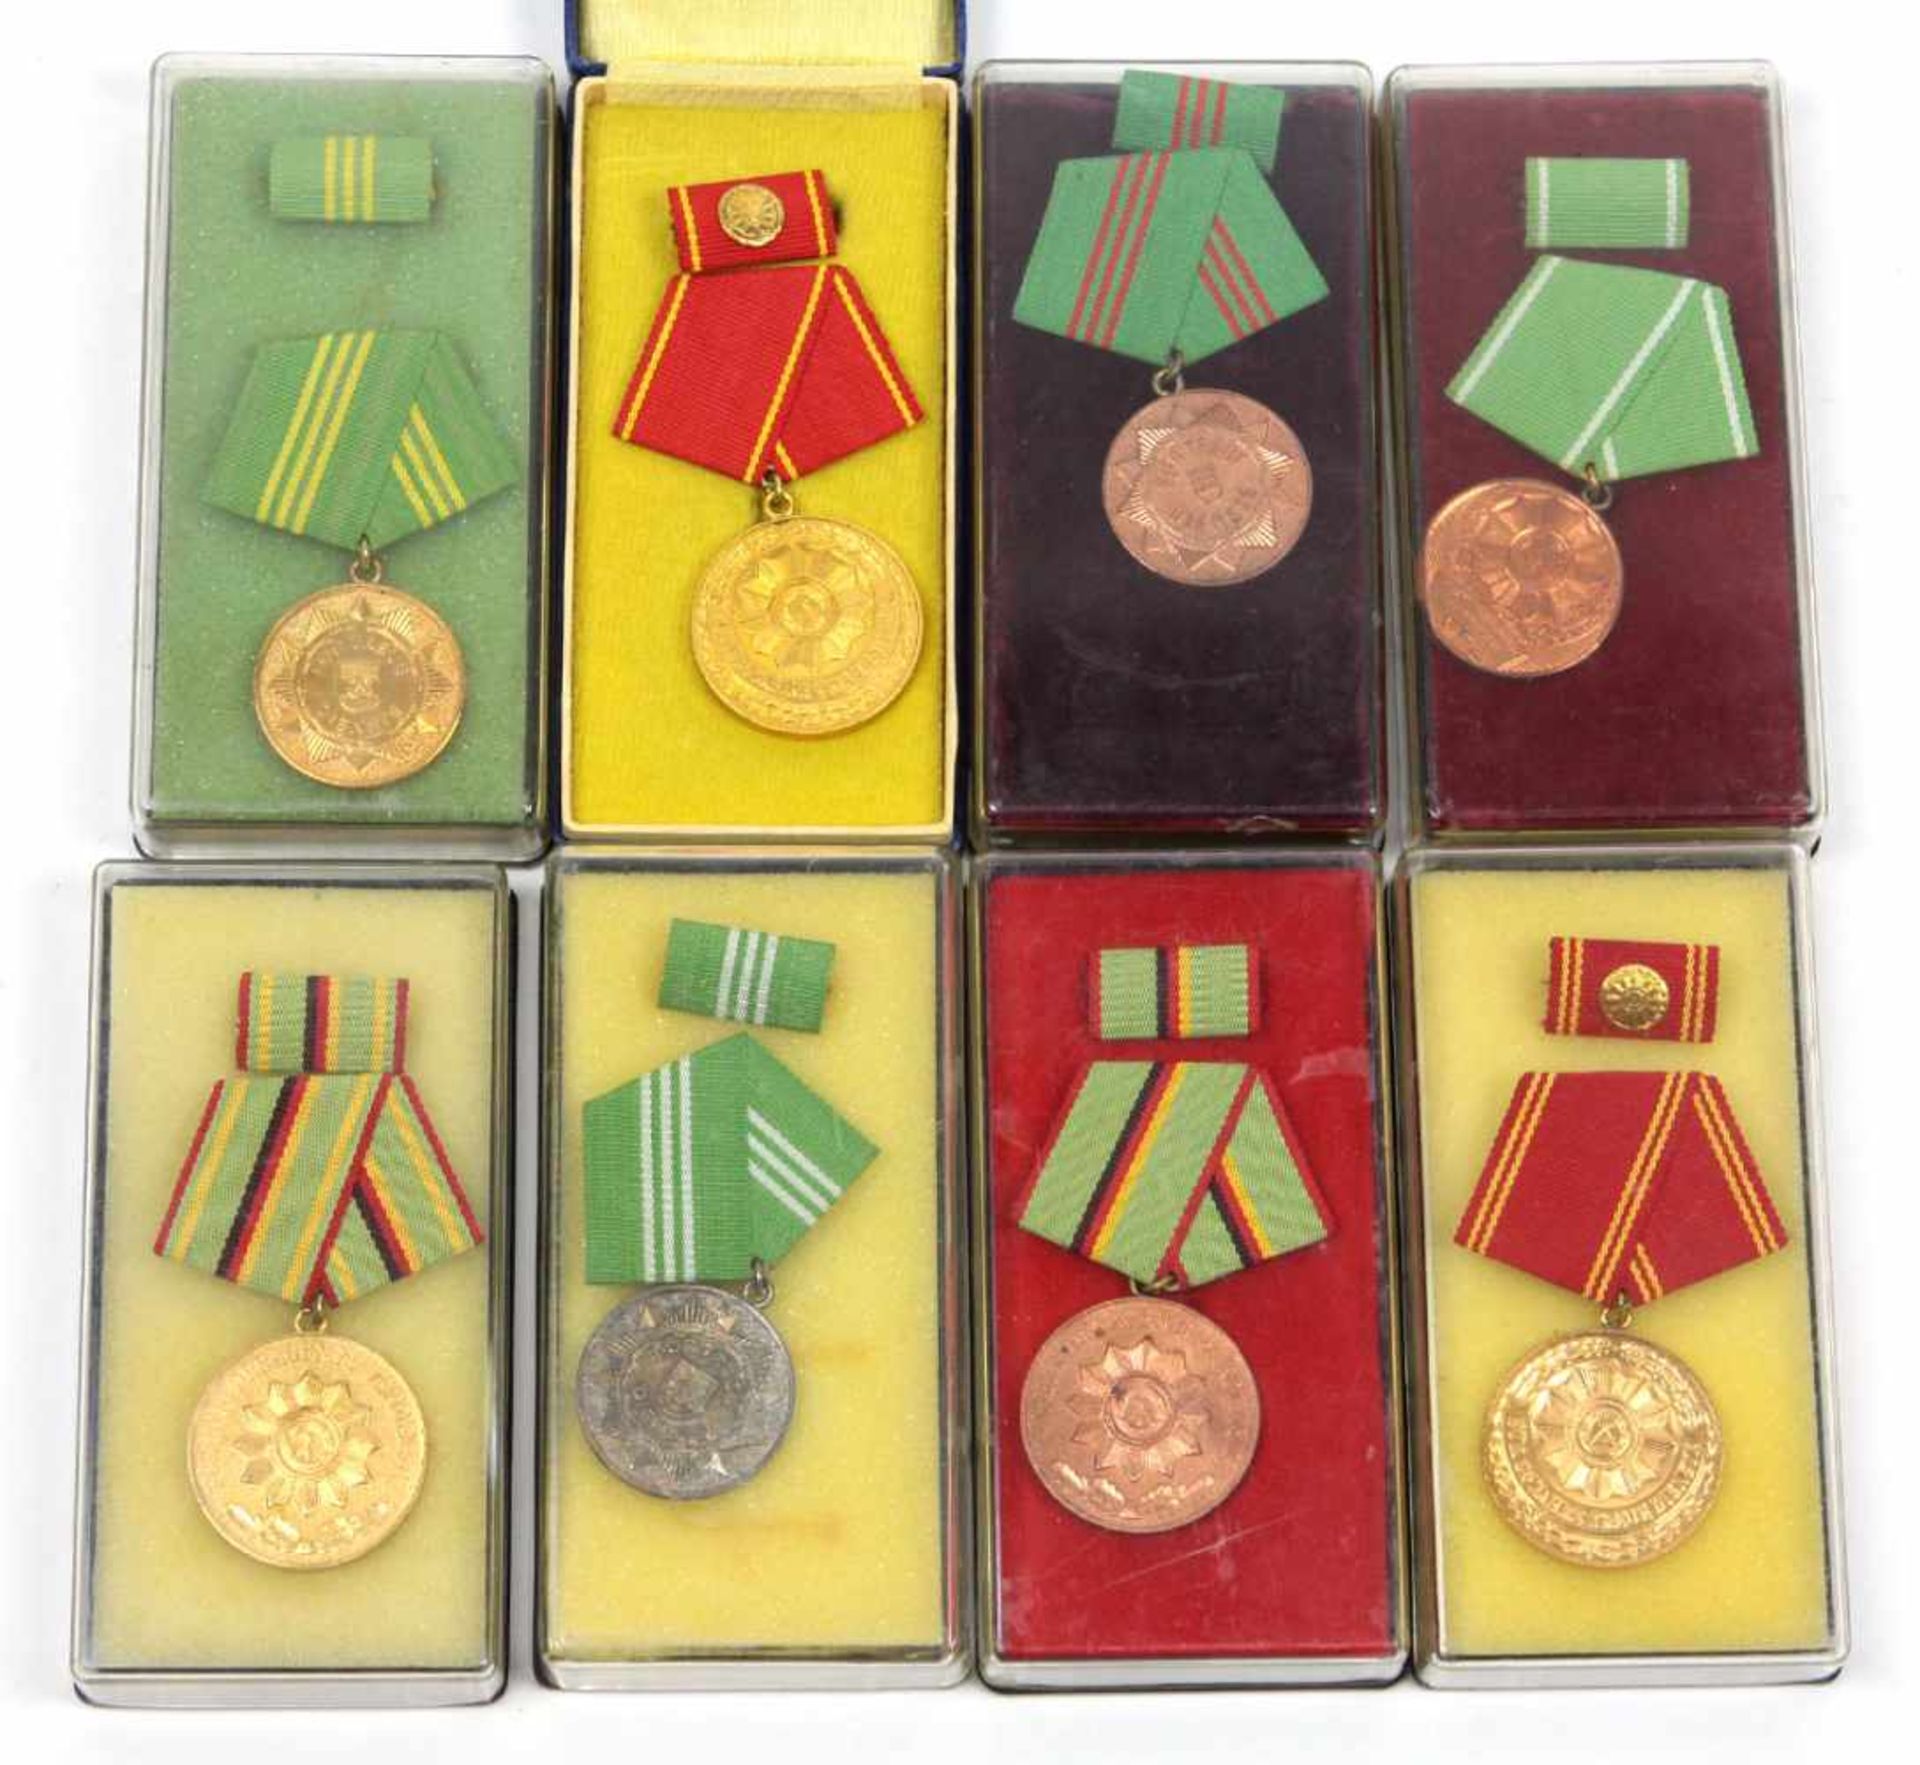 8 MDI Auszeichnungen DDRdabei 3er Medaillensatz für treue Dienste in gold, silber u. bronze u. 3